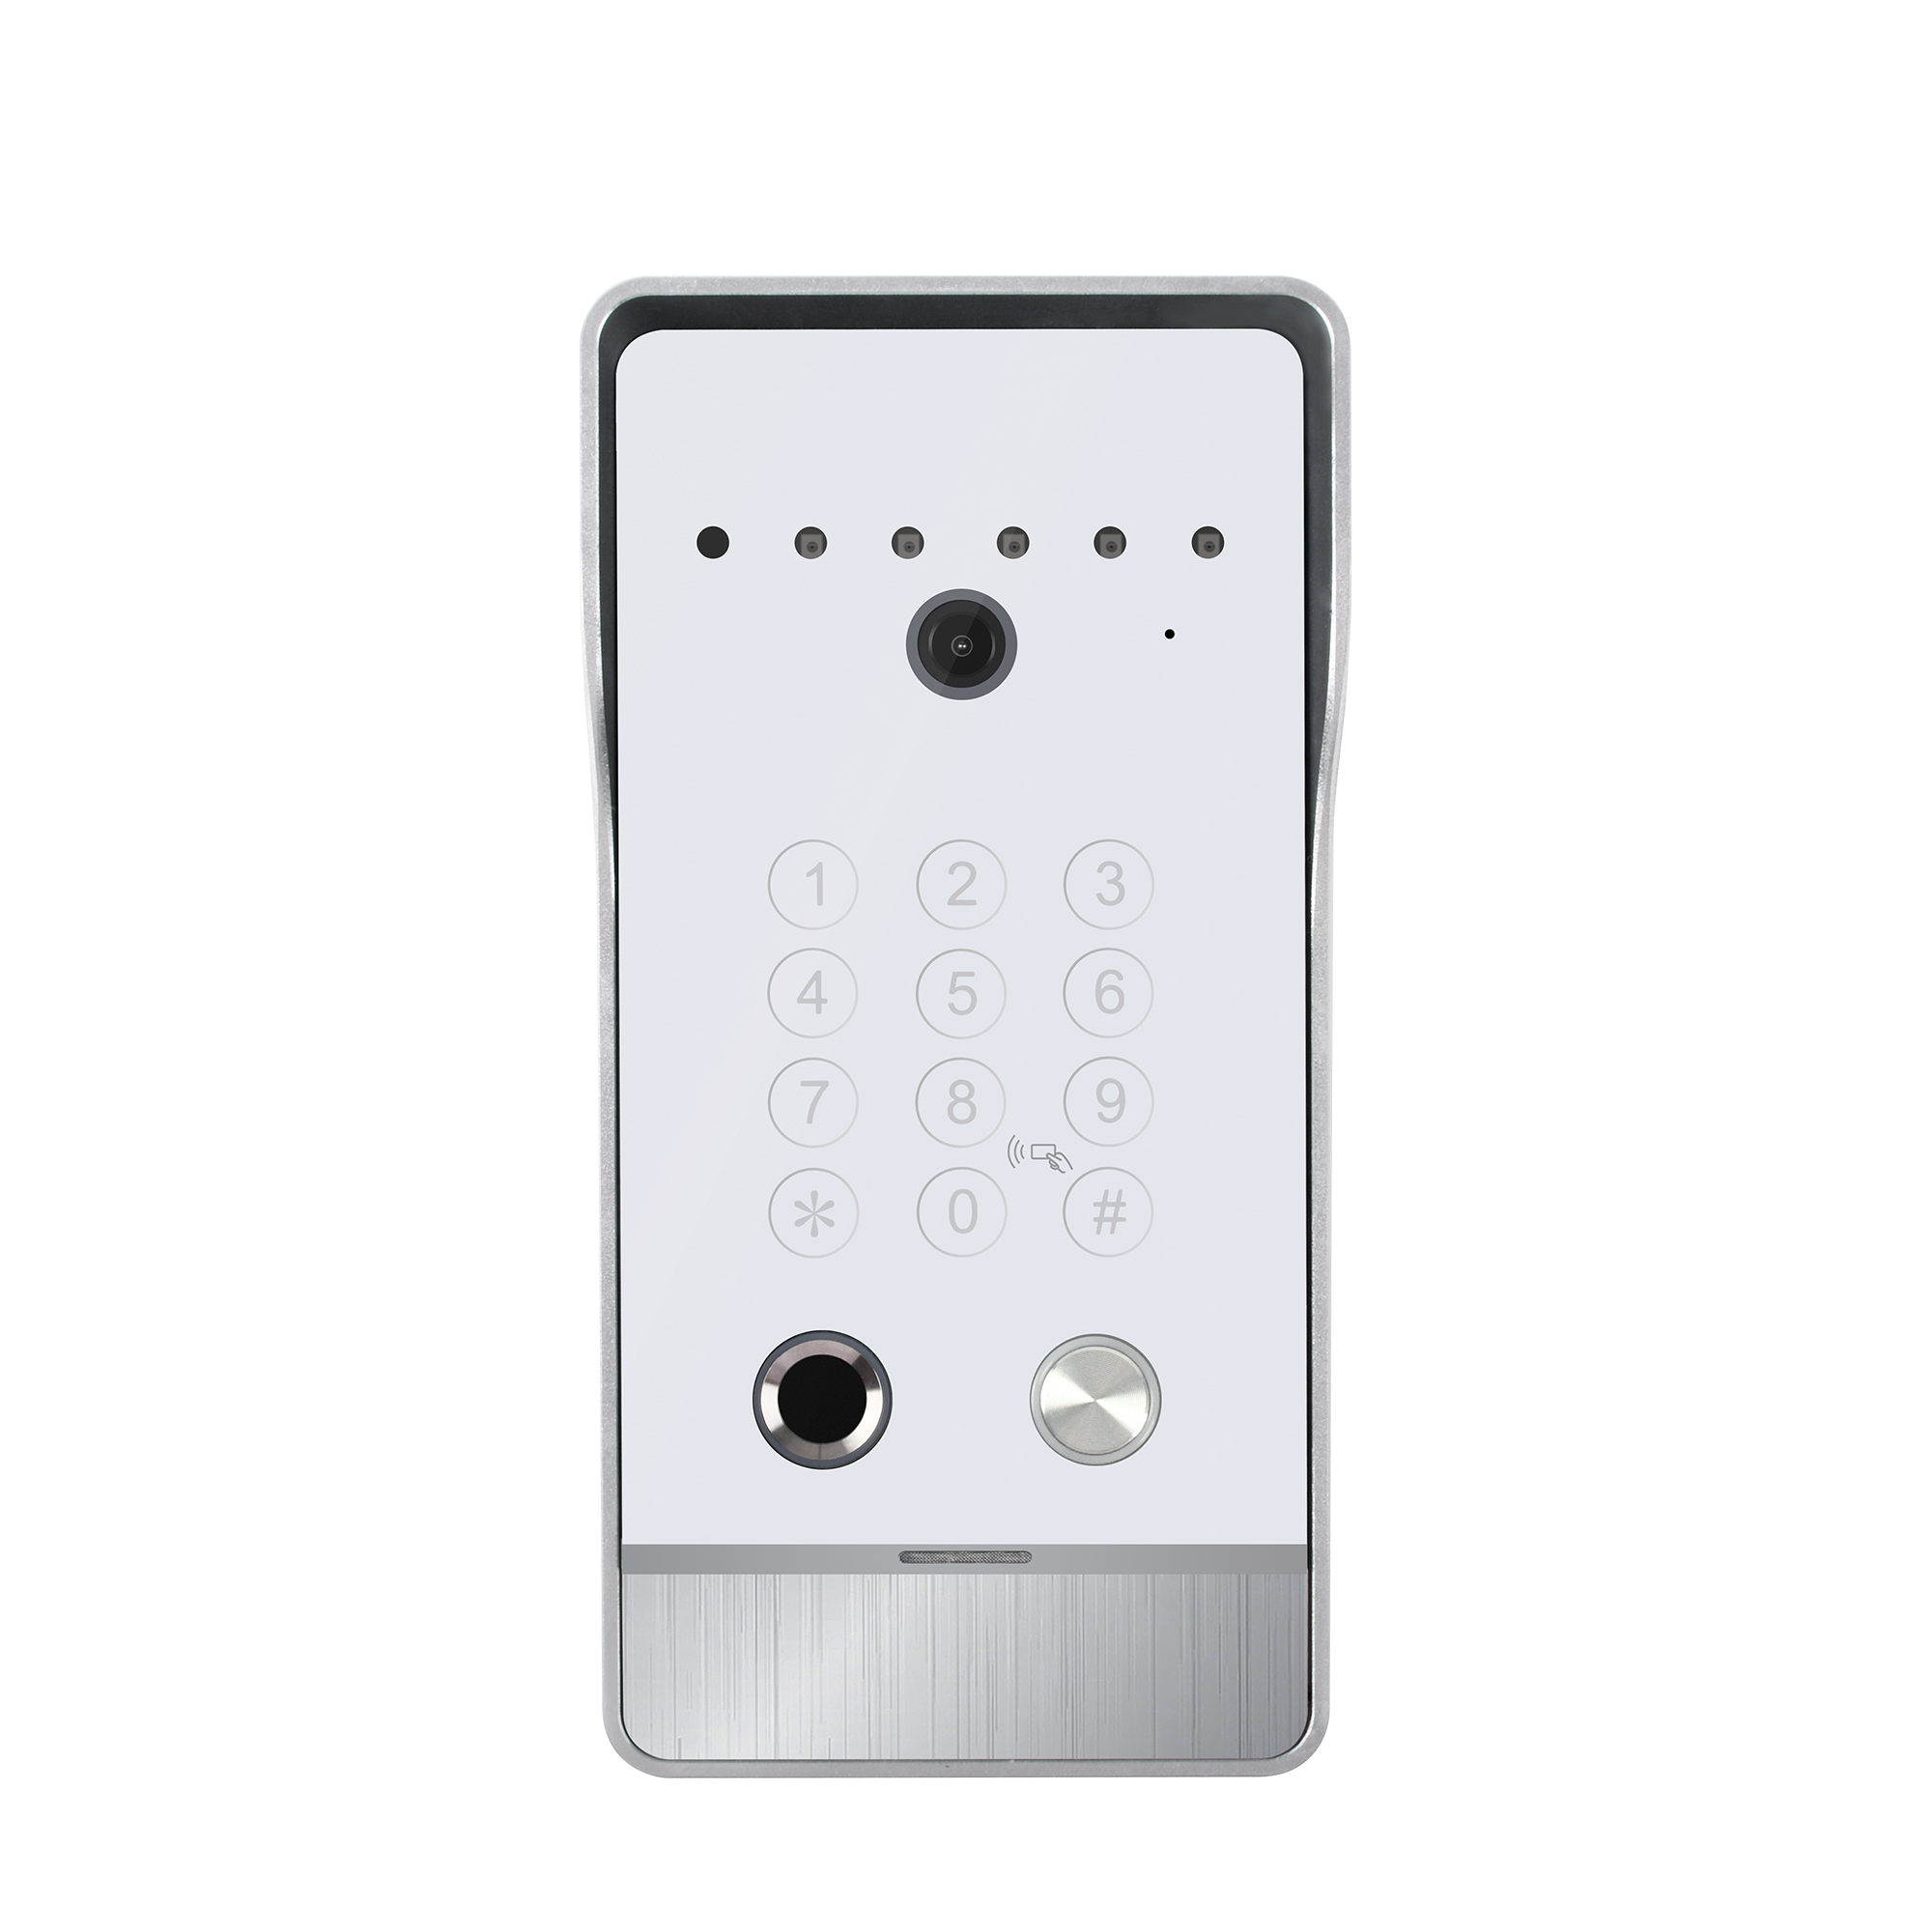 94217 многоквартирных домов с использованием вызывной станции для видеодомофона Кнопочная панель вызова дверной домофонной системы